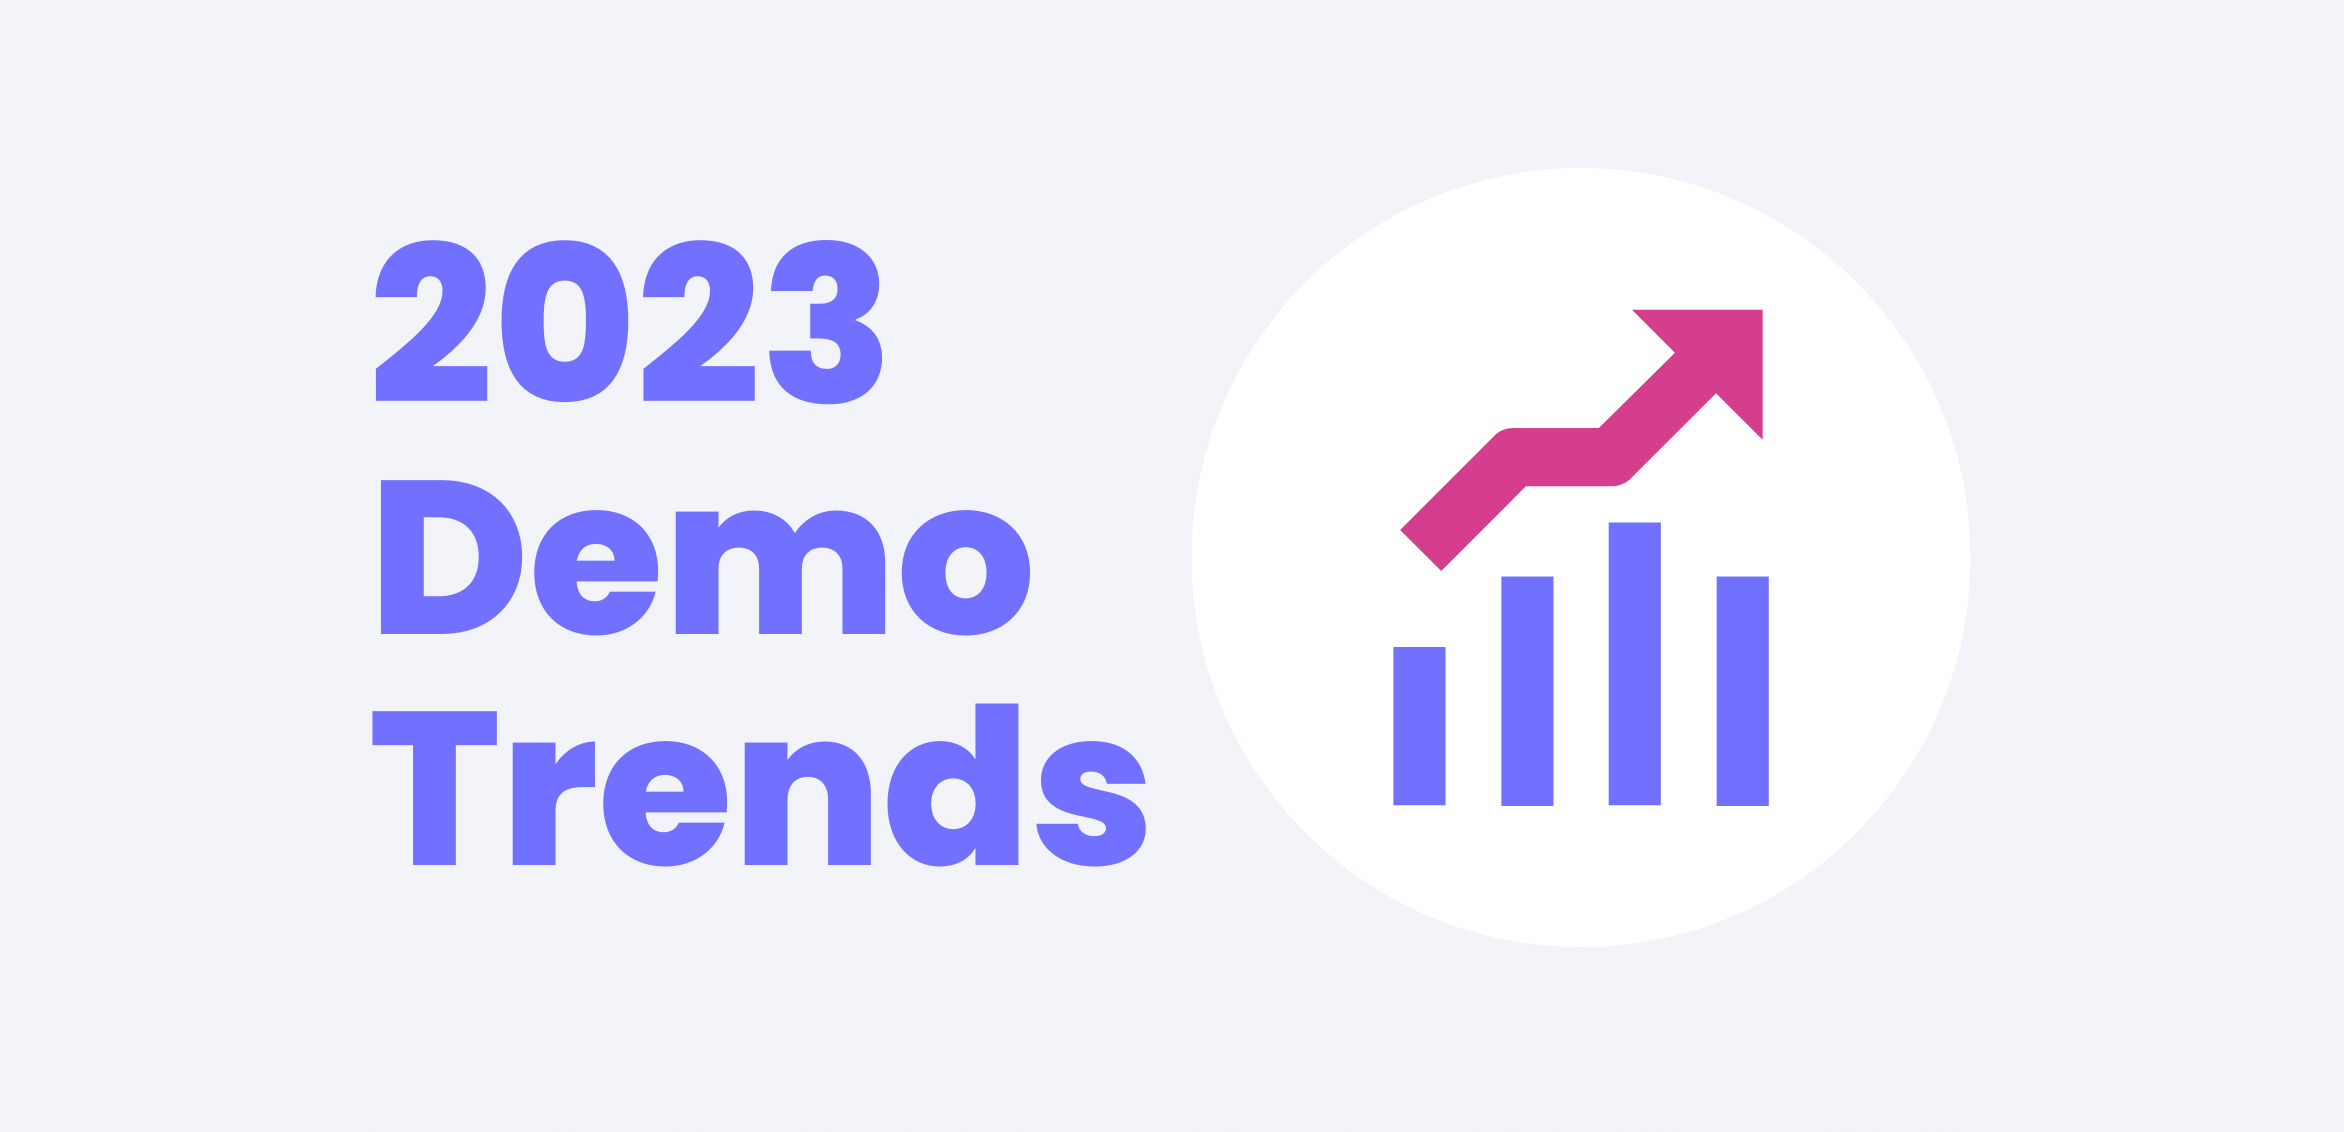 2023 demo trends